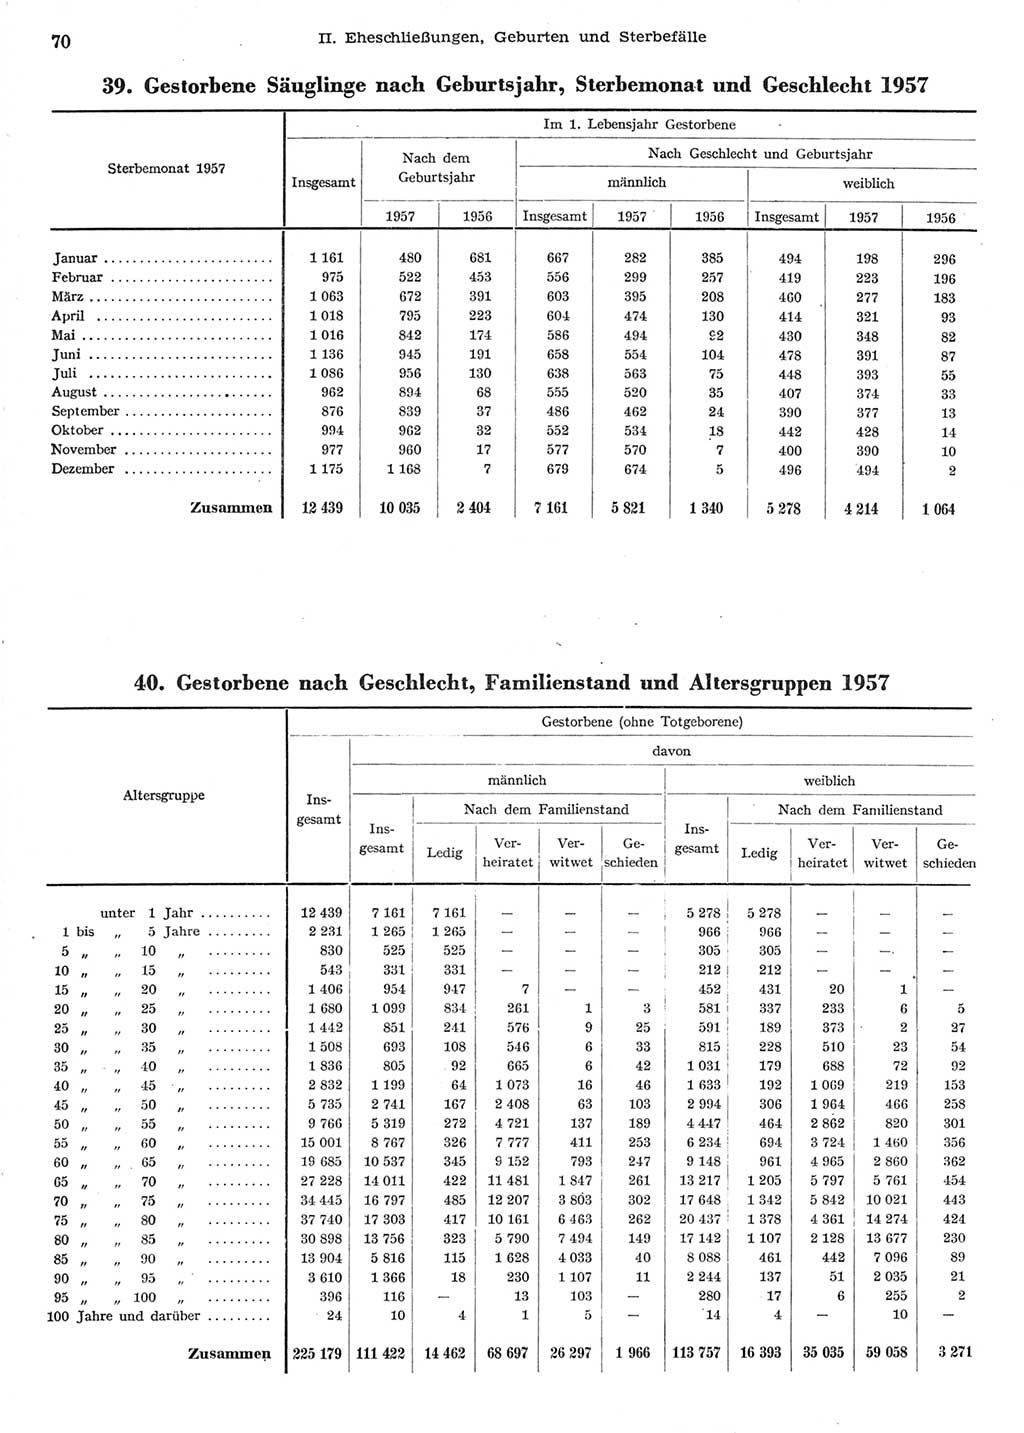 Statistisches Jahrbuch der Deutschen Demokratischen Republik (DDR) 1958, Seite 70 (Stat. Jb. DDR 1958, S. 70)